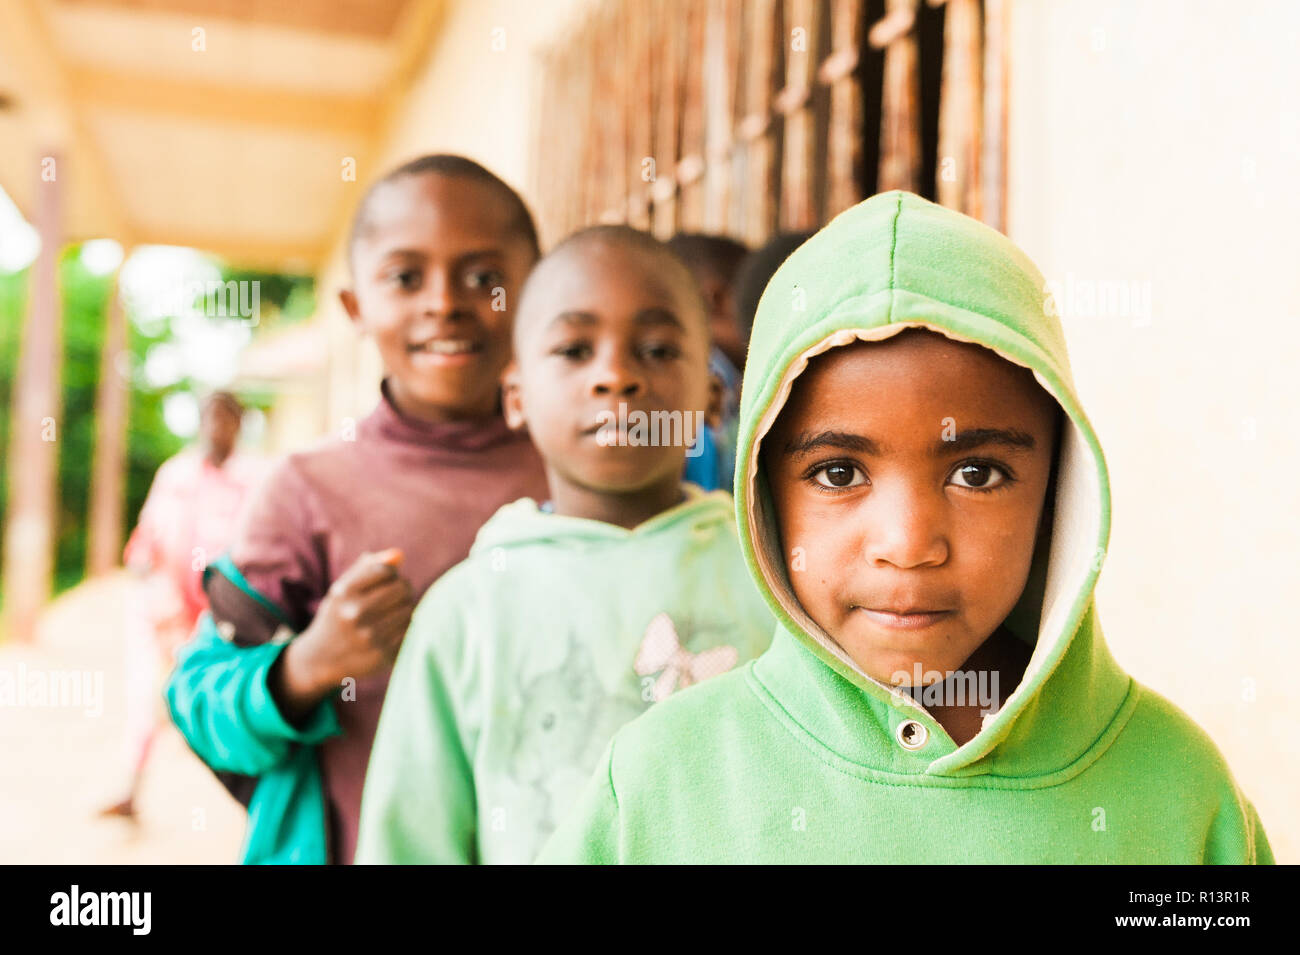 Bafoussam, Camerun - 06 agosto 2018: close up ritratto di giovane africano scuola per bambini cercando nella fotocamera con sorriso e gioia con grandi occhi Foto Stock